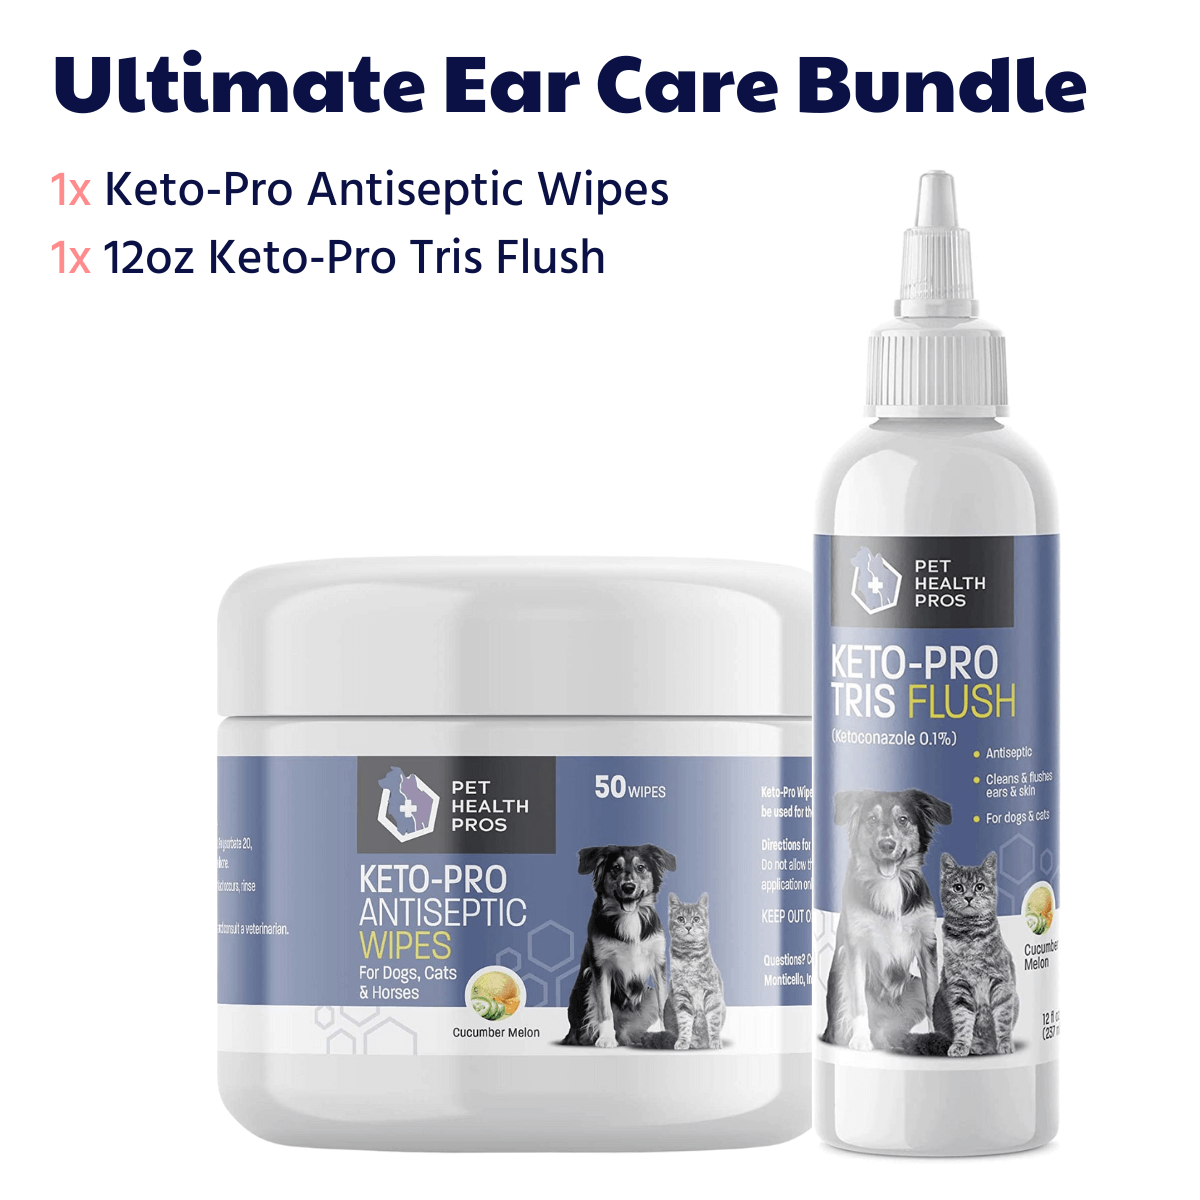 Ultimate Ear Care Bundle